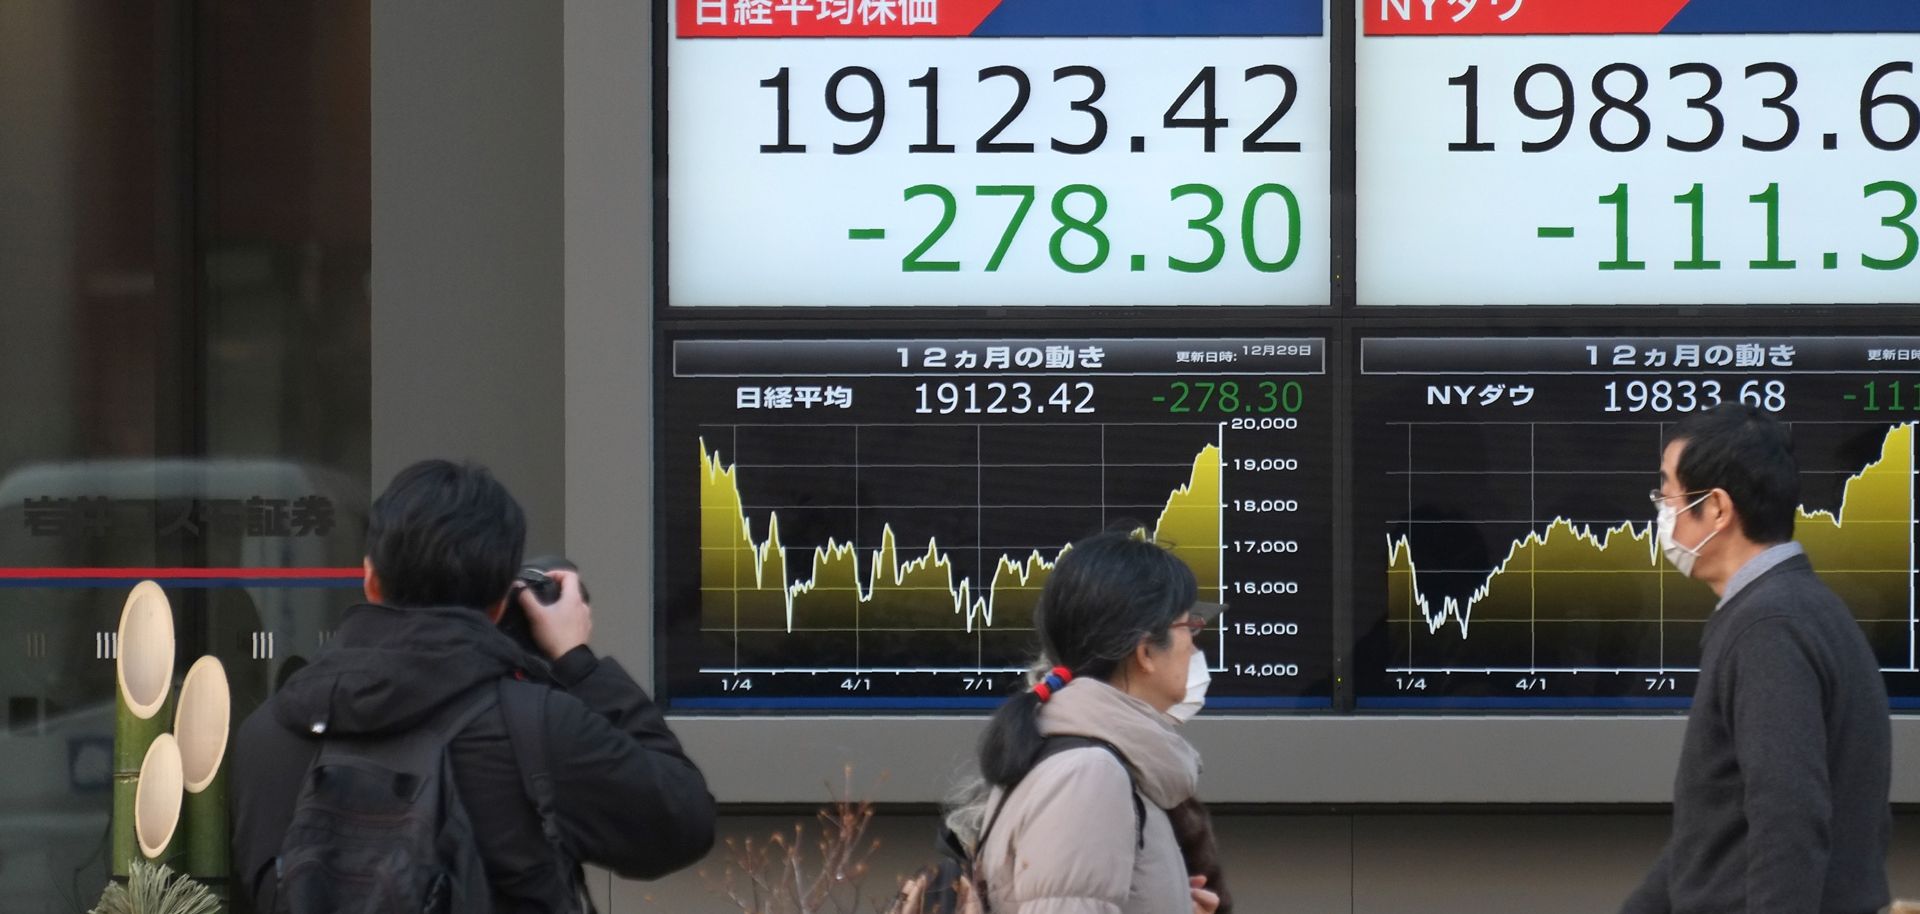 Japan Looks to Escape Its Economic Slump